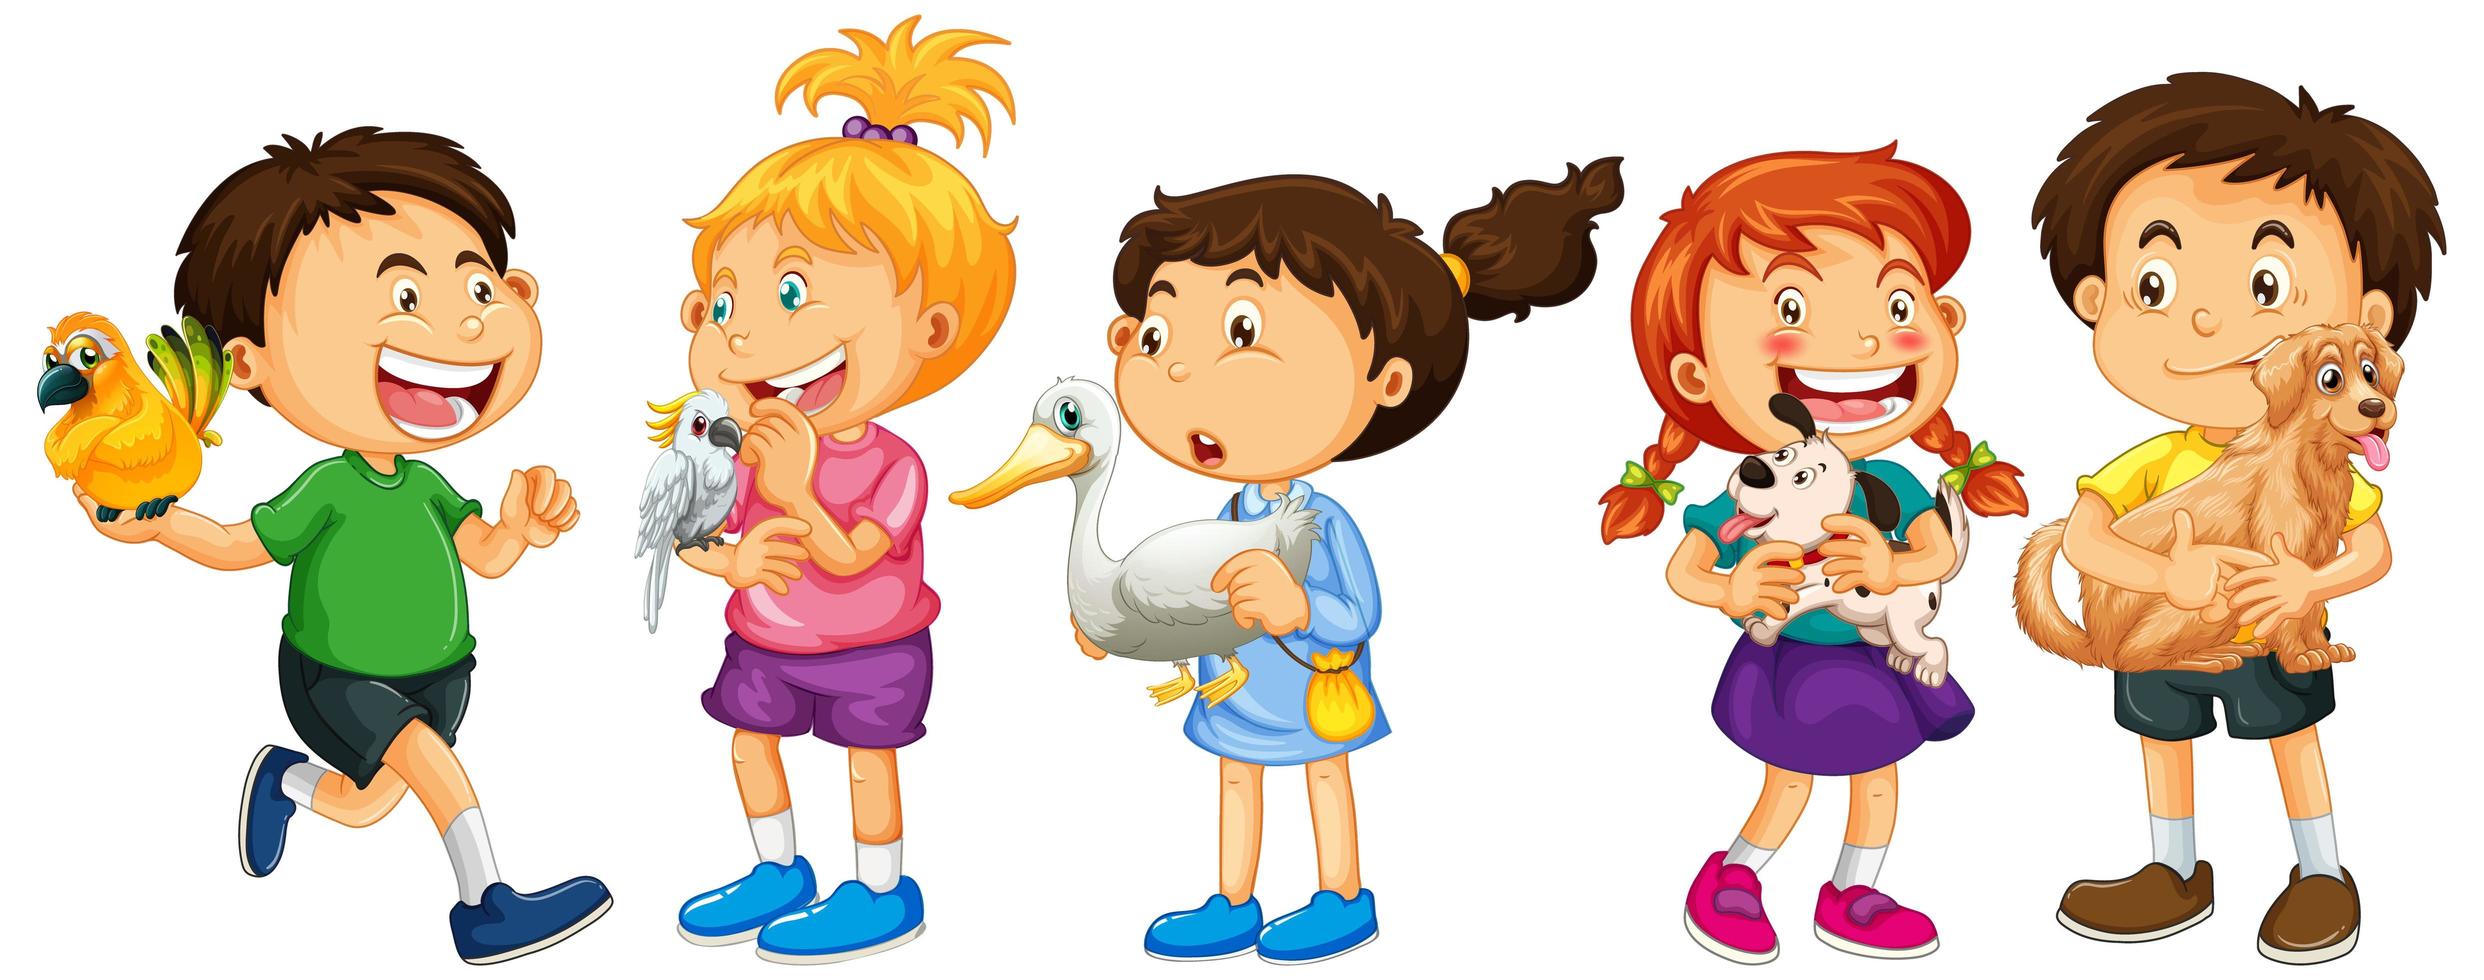 Grupo de personajes de dibujos animados de niños pequeños sobre fondo blanco. vector